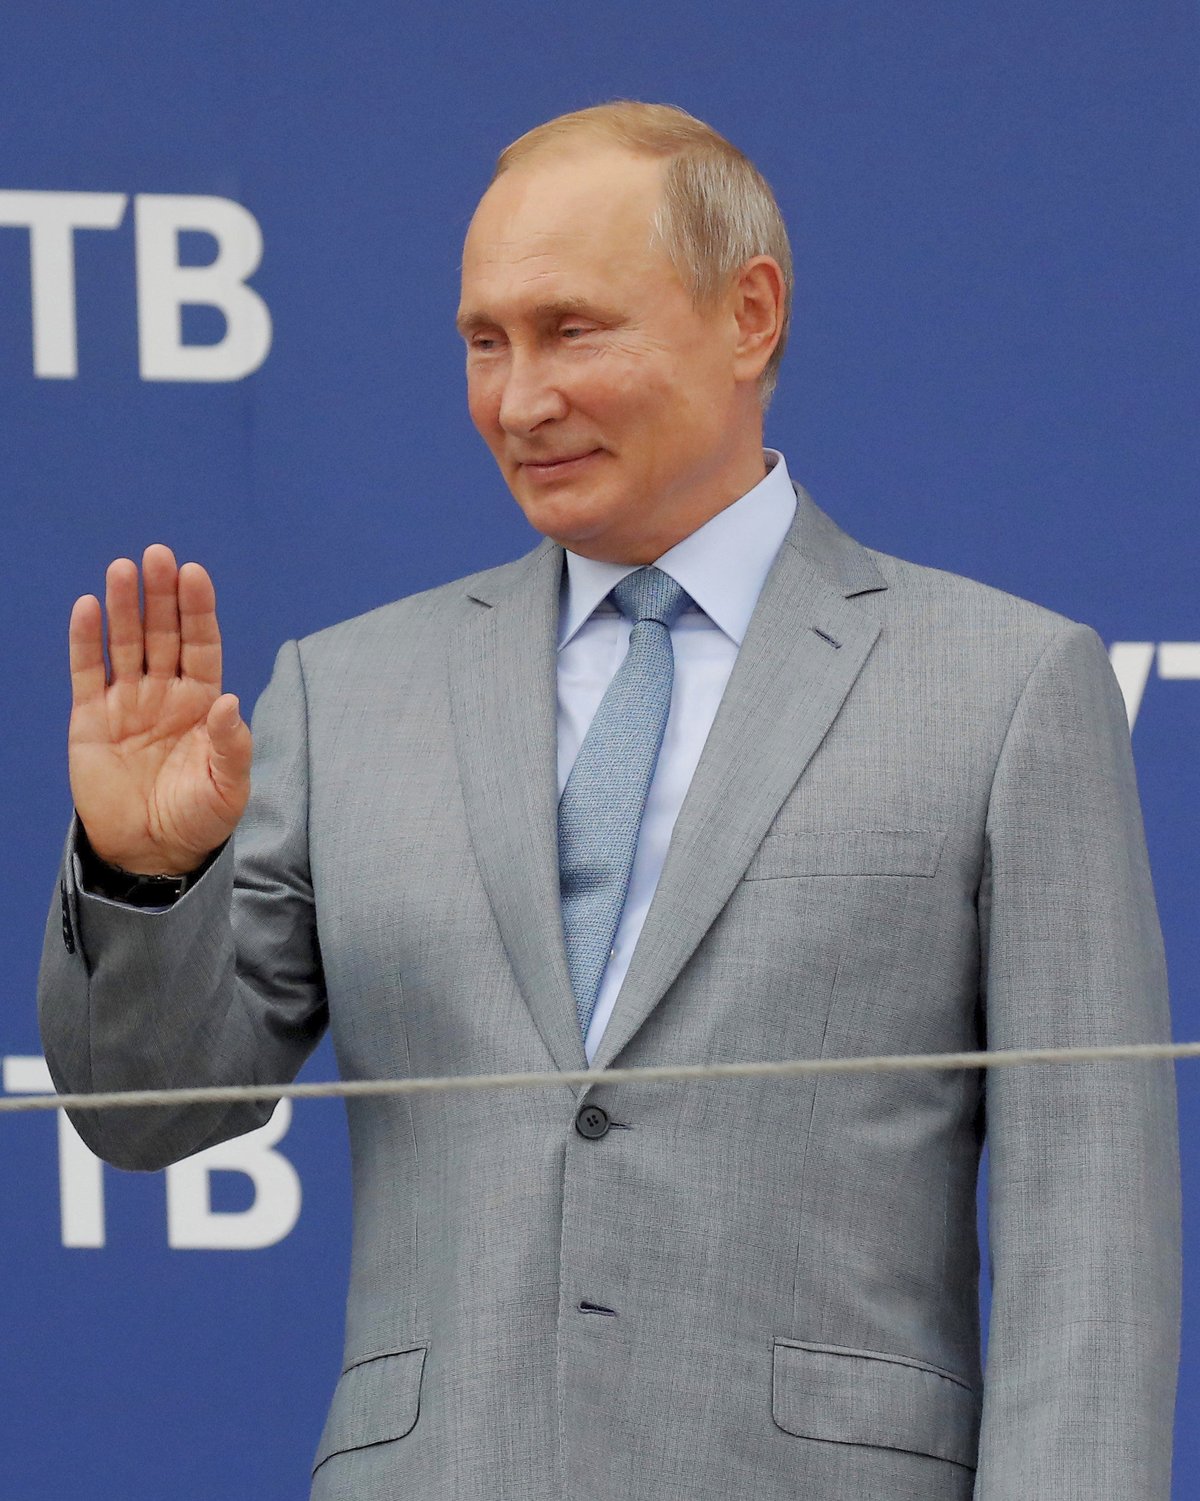 Ruský prezident Vladimir Putin se pustil do Sergeje Skripala. Označil ho za pacholka a zrádce.